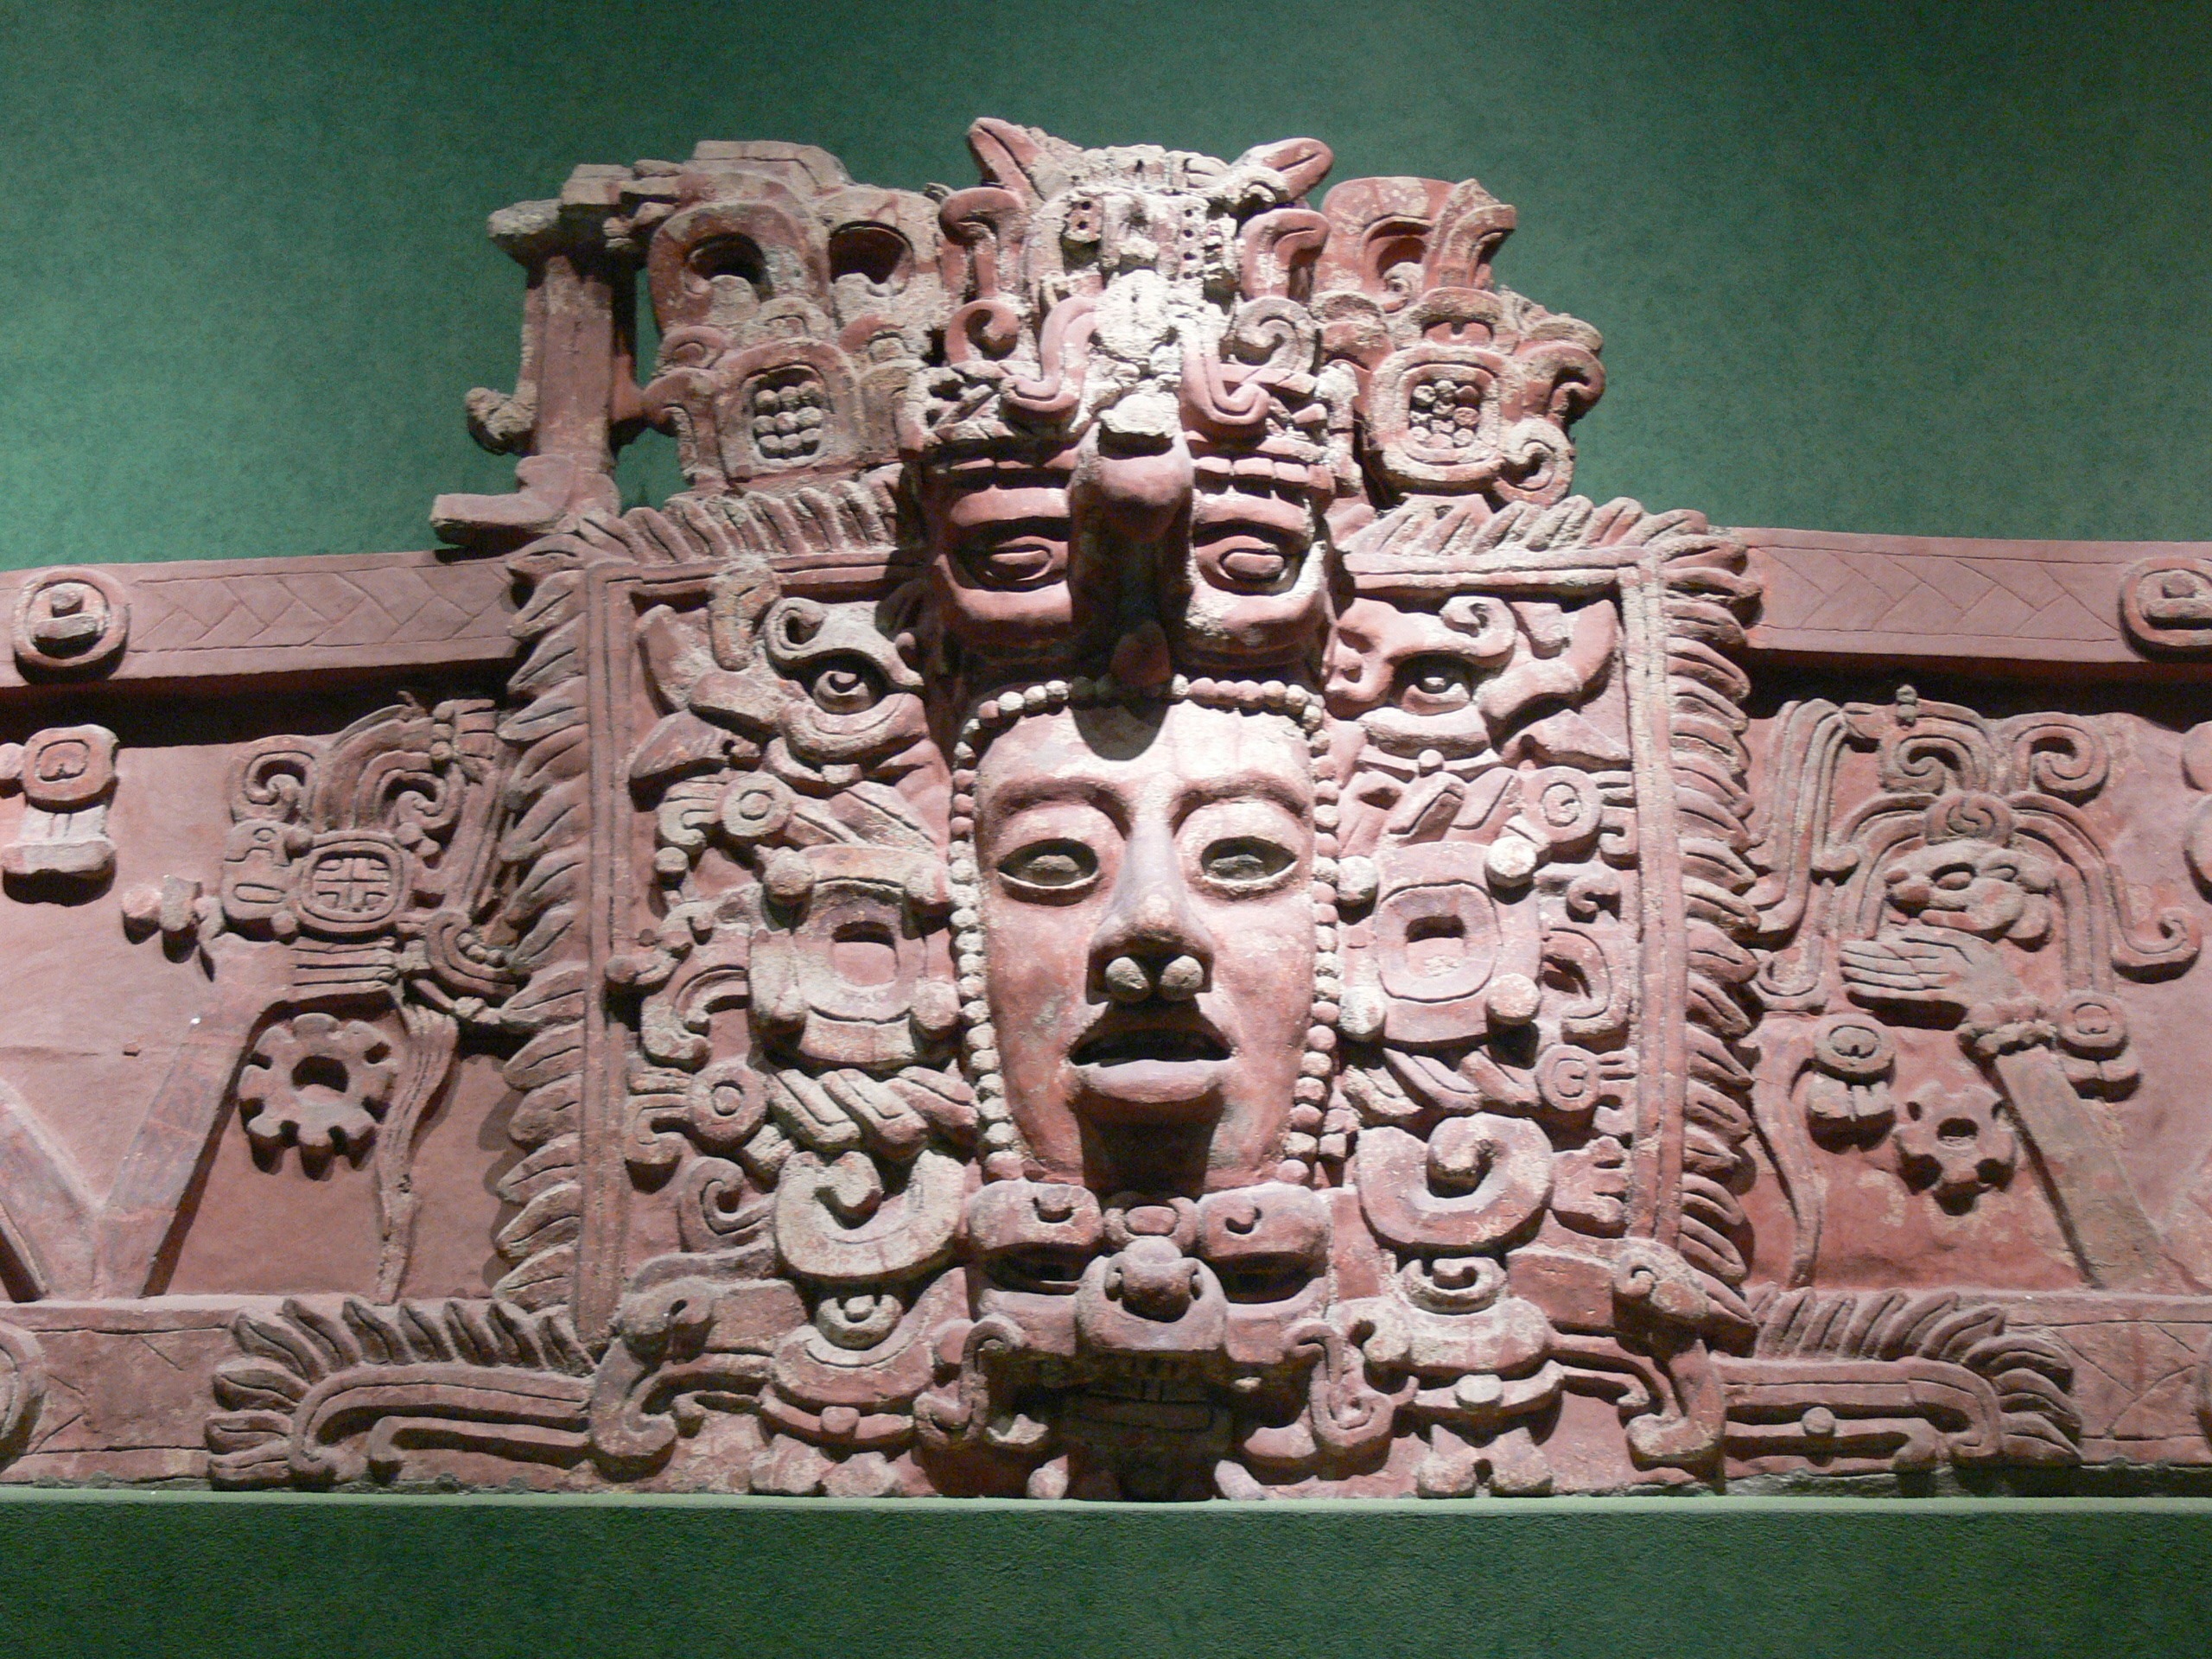 The Mayan Art